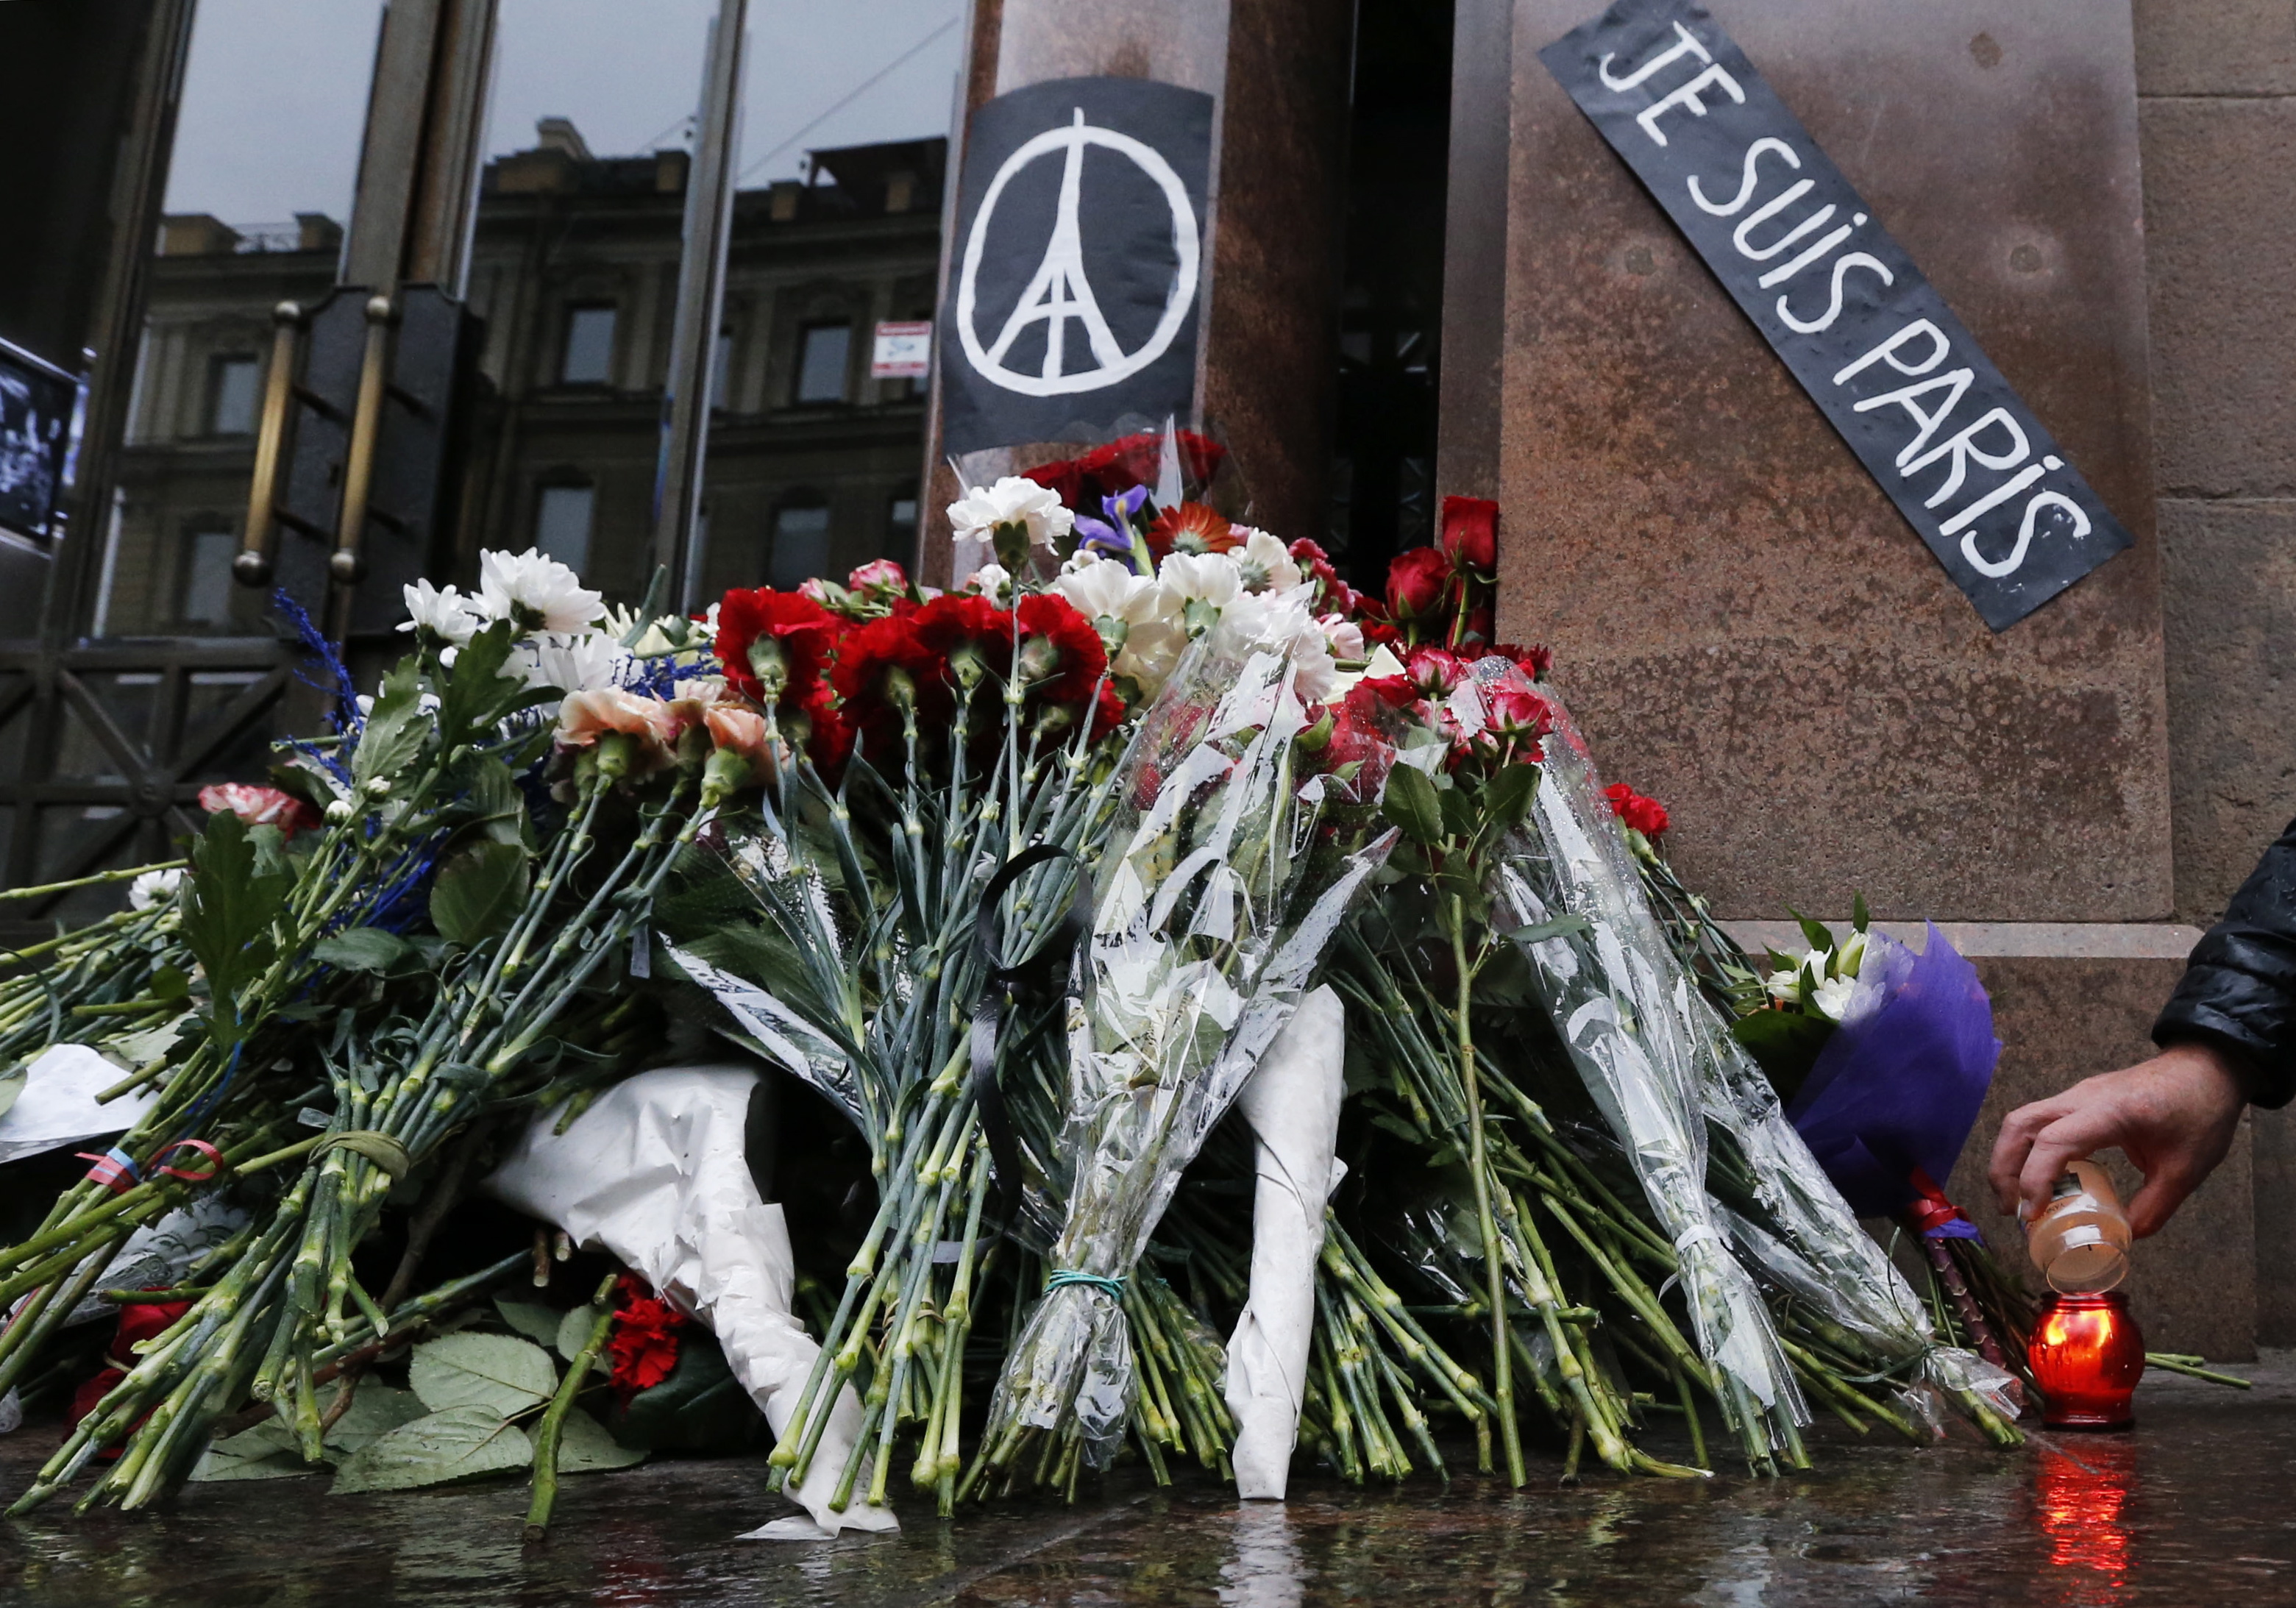 Франция выразила соболезнования. Мир скорбит вместе. Во Франции прощаются с жертвами теракта. Теракт в Париже 2015 реальные фот.